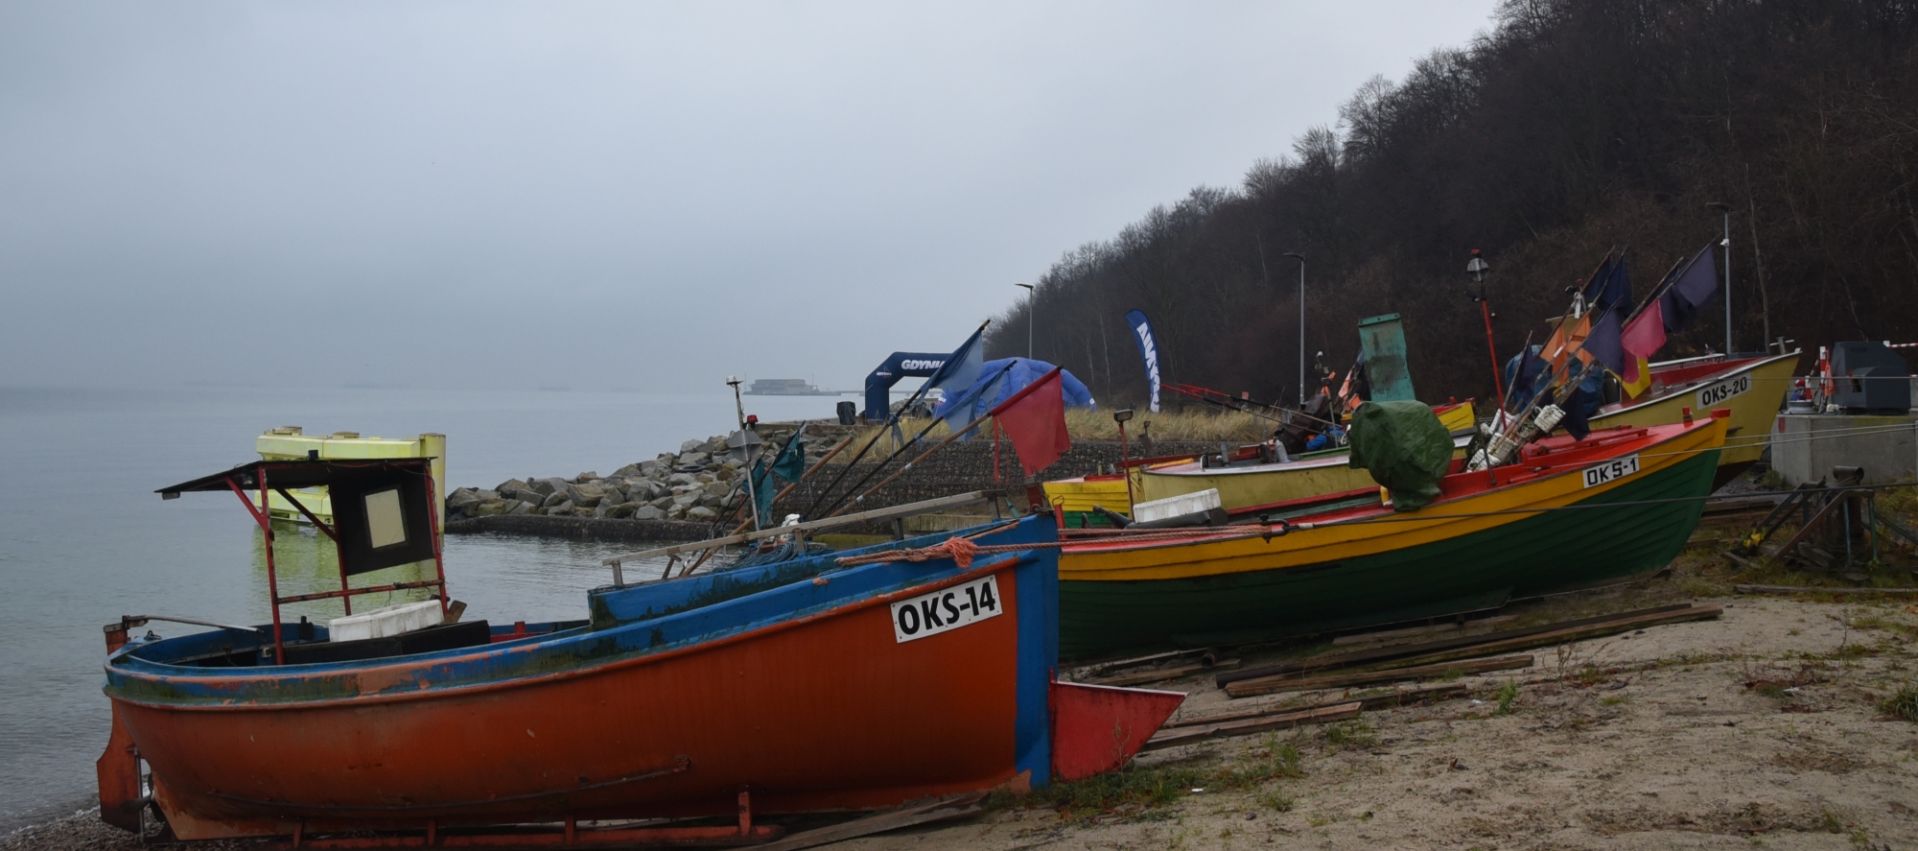 łodzie rybackie na Oksywiu 